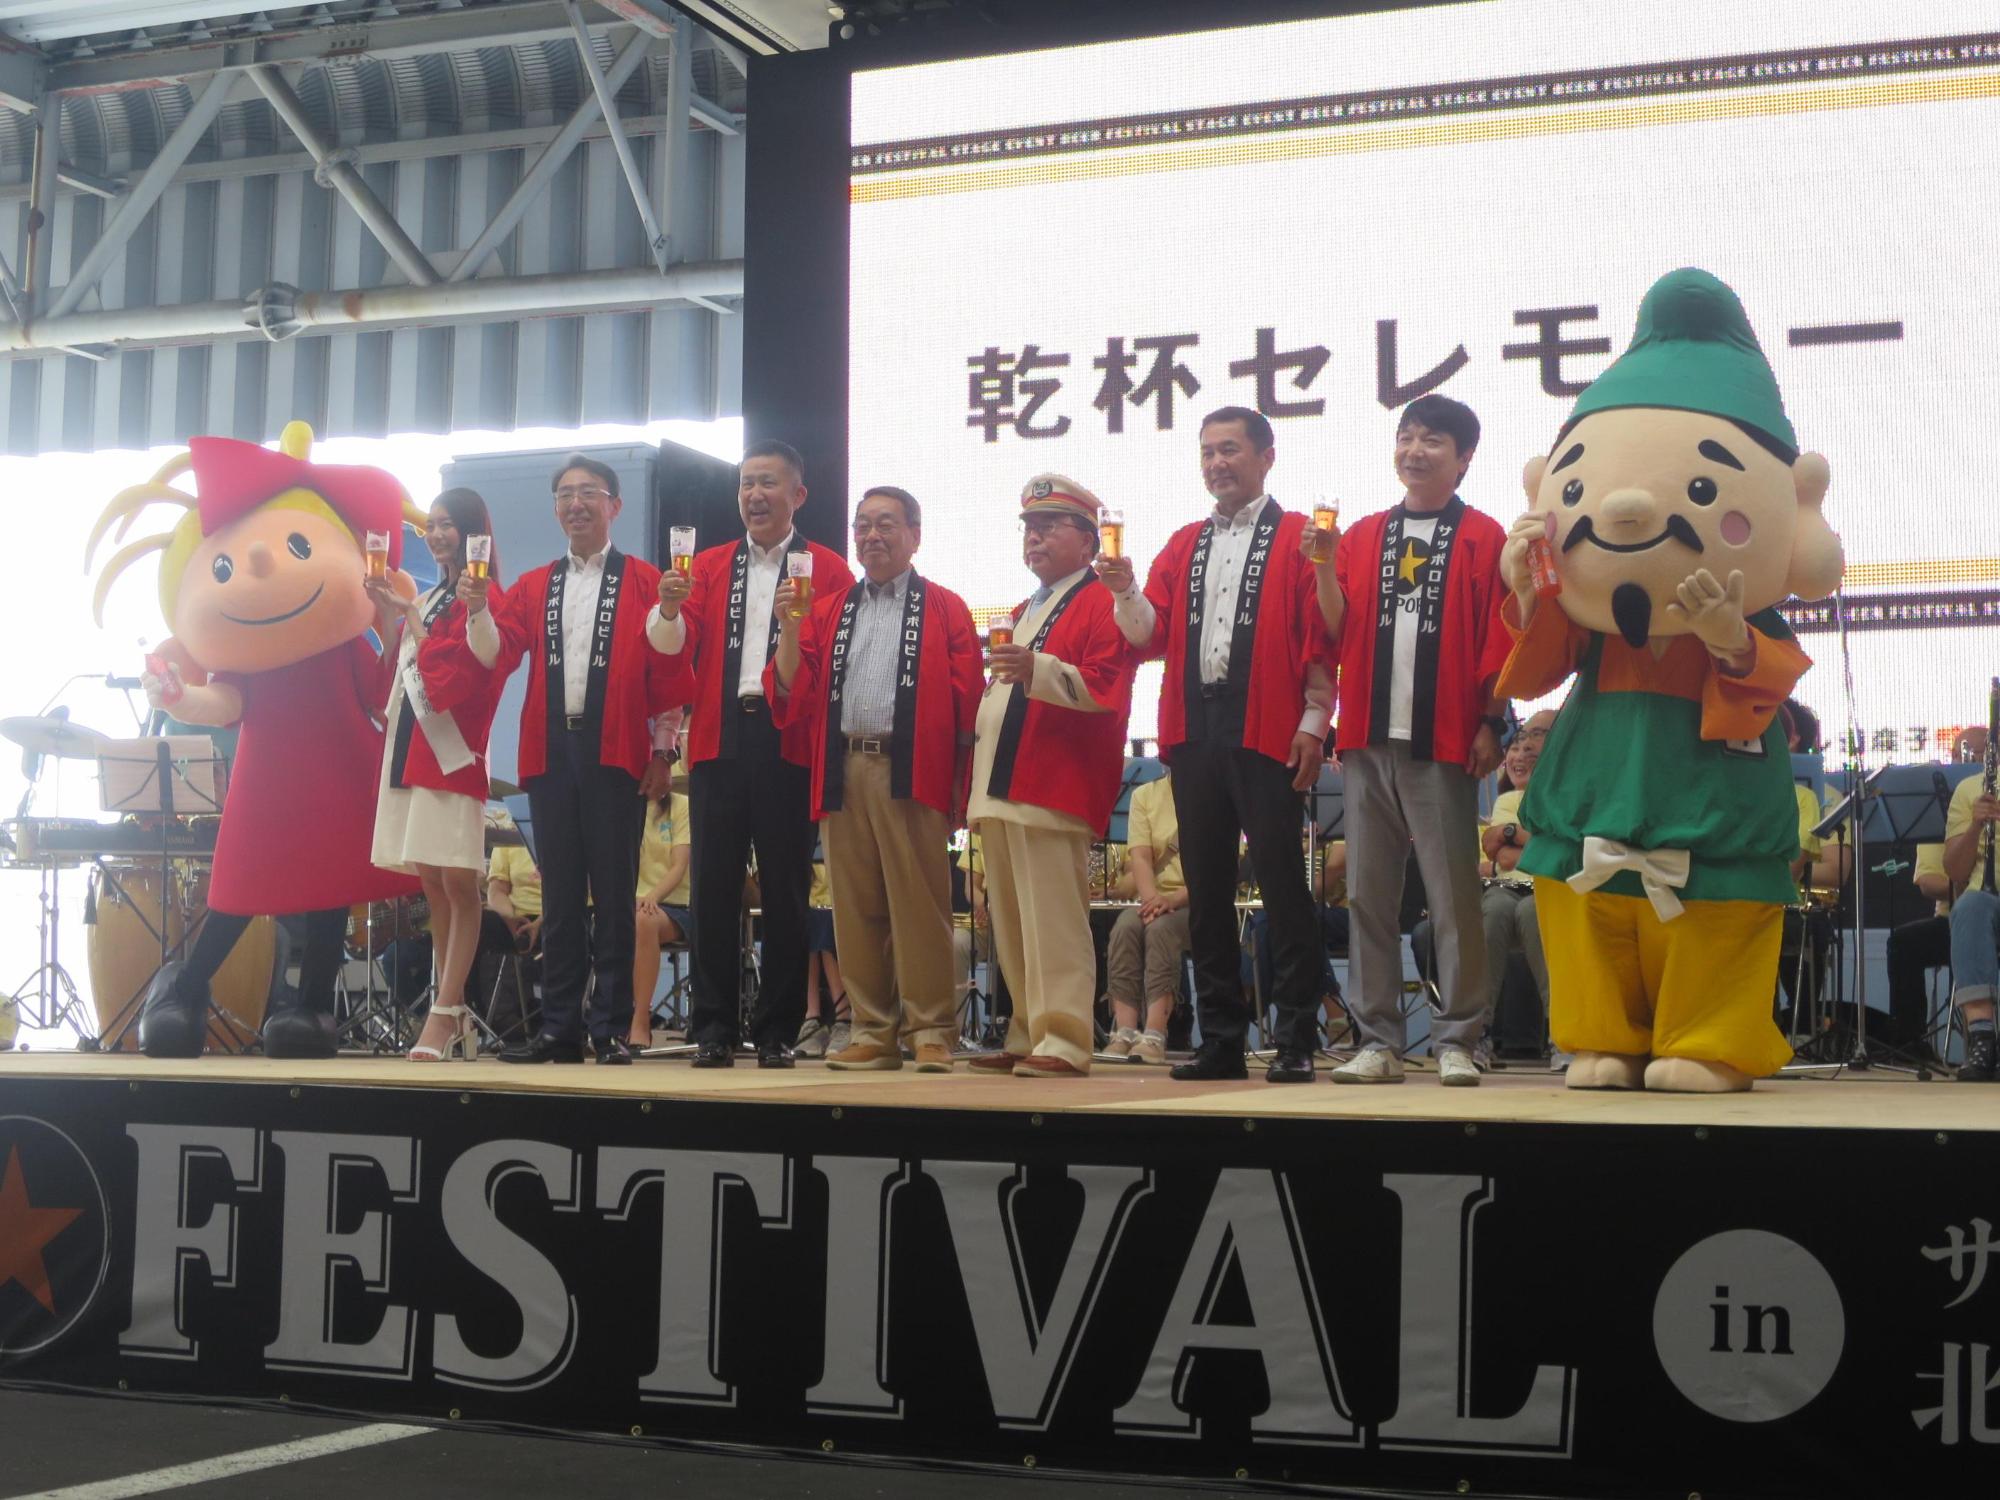 おんこ祭のステージでビールを片手に並ぶ原田市長と関係者の写真